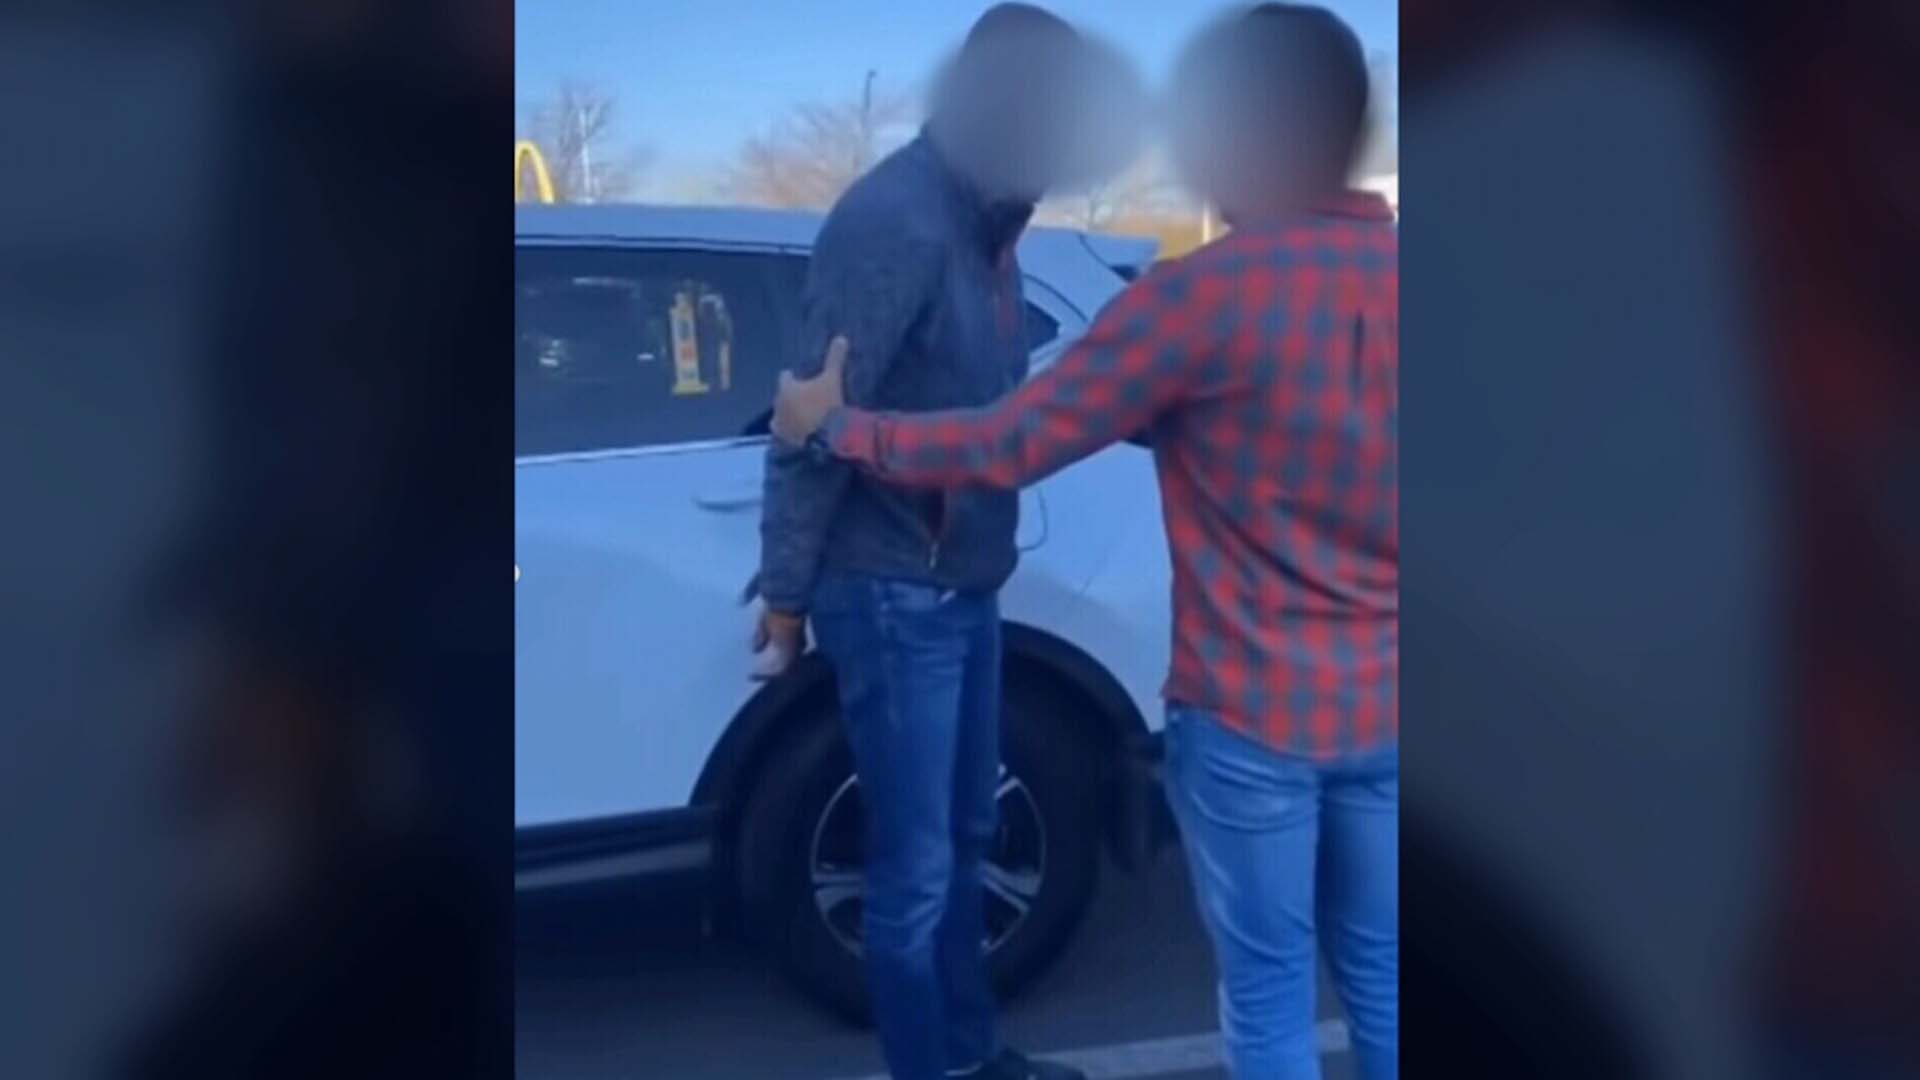 Dans une vidéo de l'incident qui circule sur les réseaux sociaux, l'homme demande aux agents s'ils lui ont passé les menottes parce qu'il est noir.